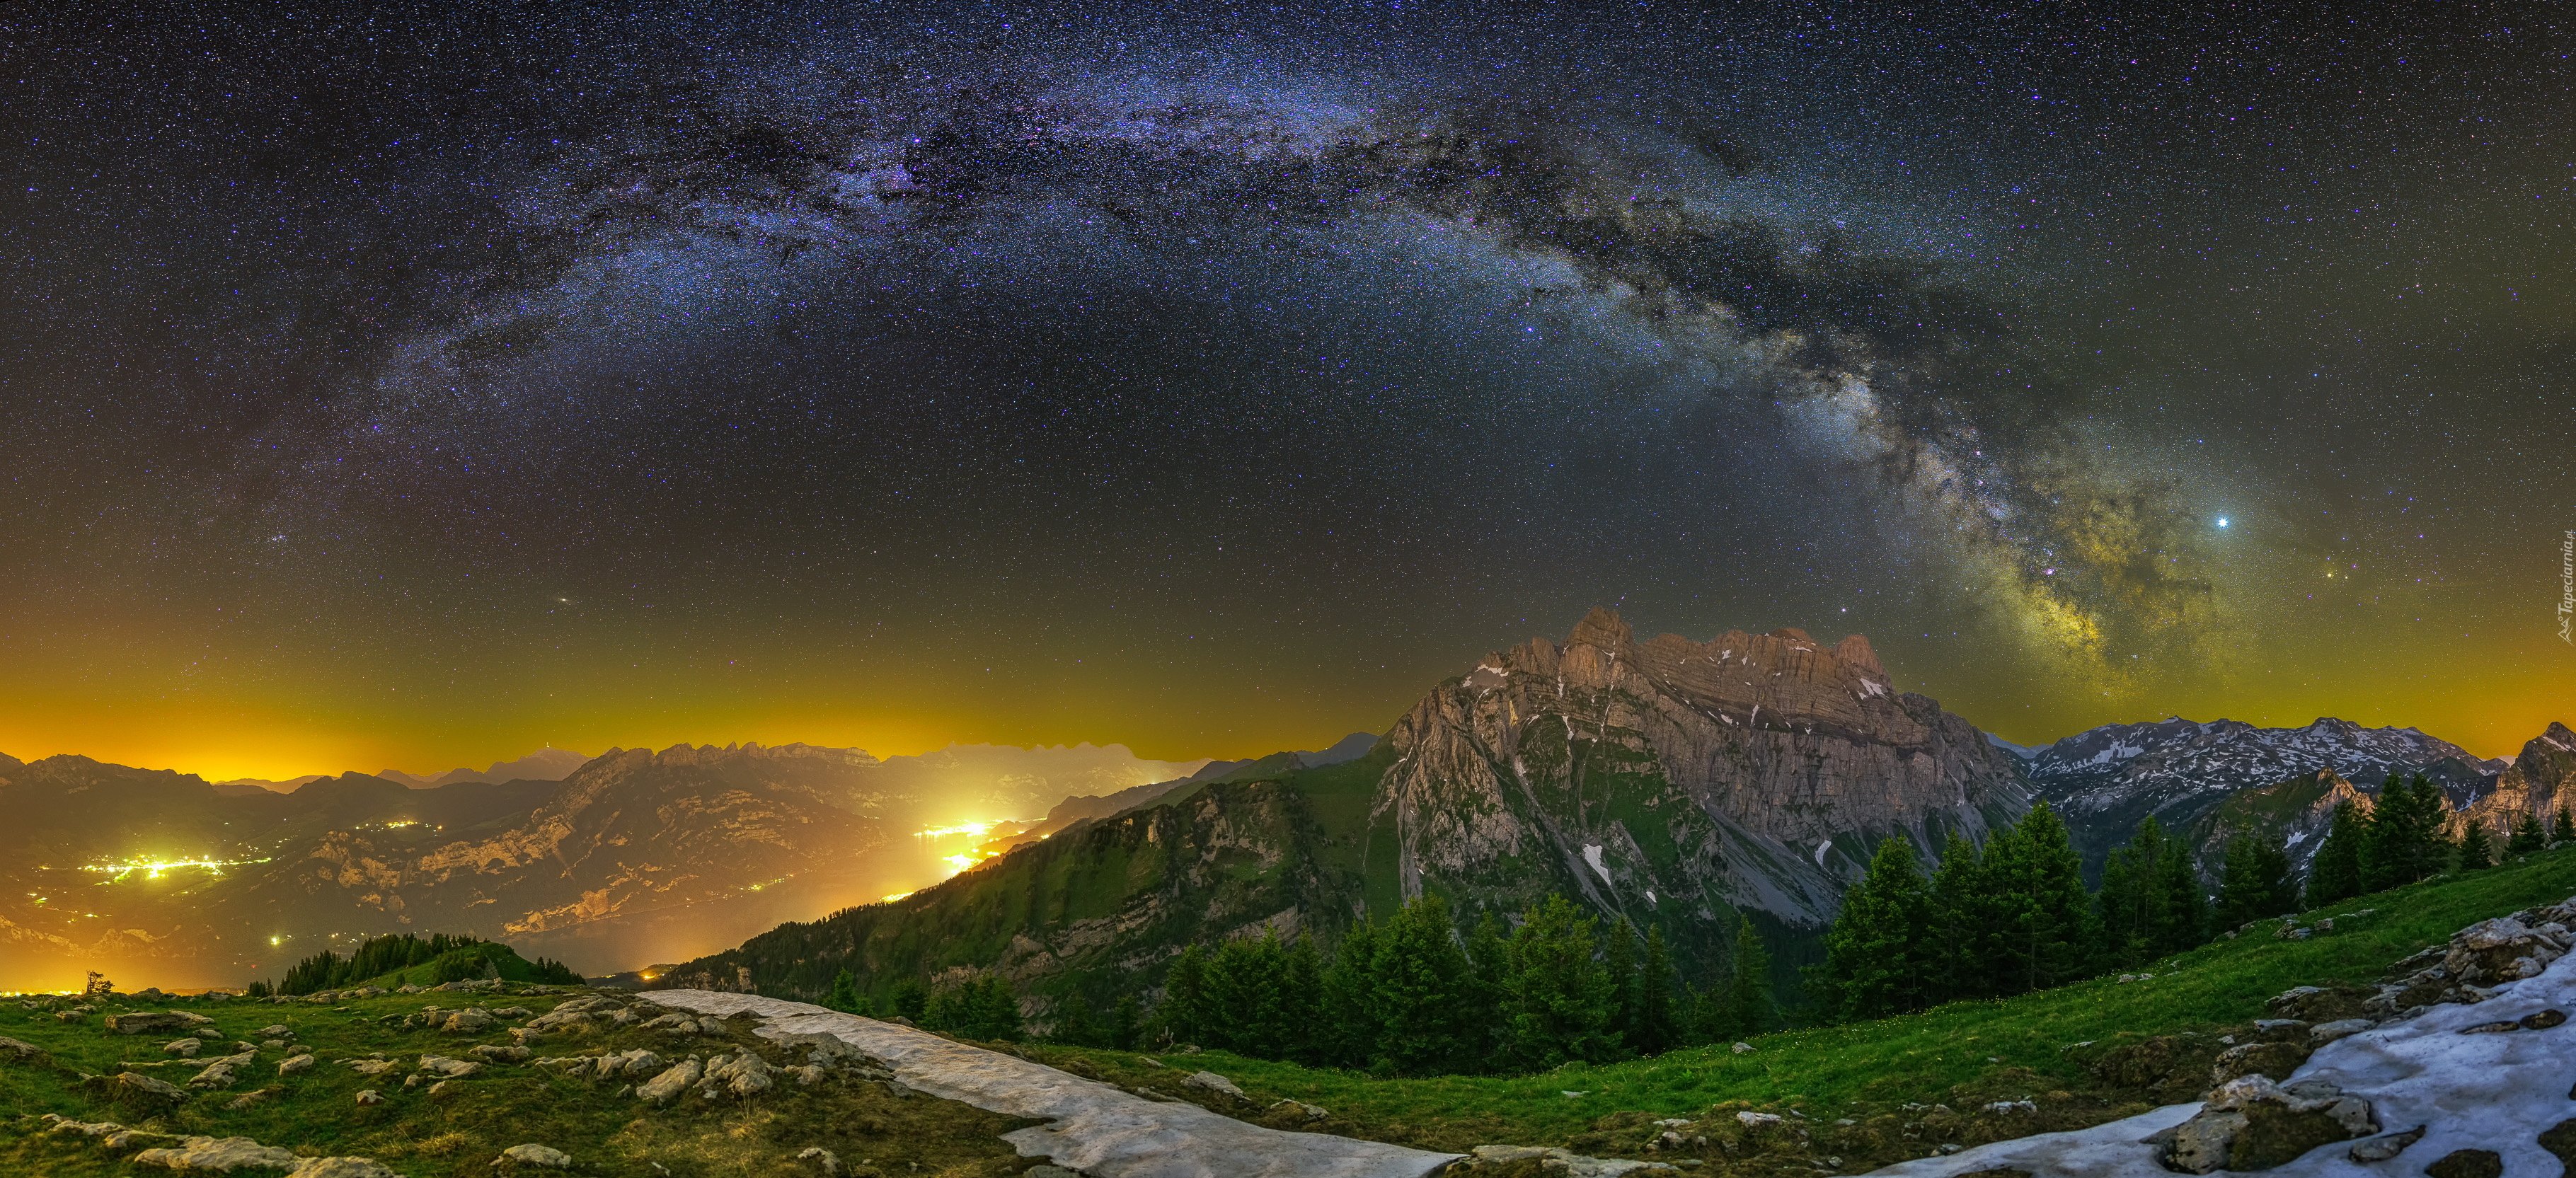 Galaktyka, Droga Mleczna, Góra Nuenchamm, Góry, Alpy Glarneńskie, Kanton Glarus, Szwajcaria